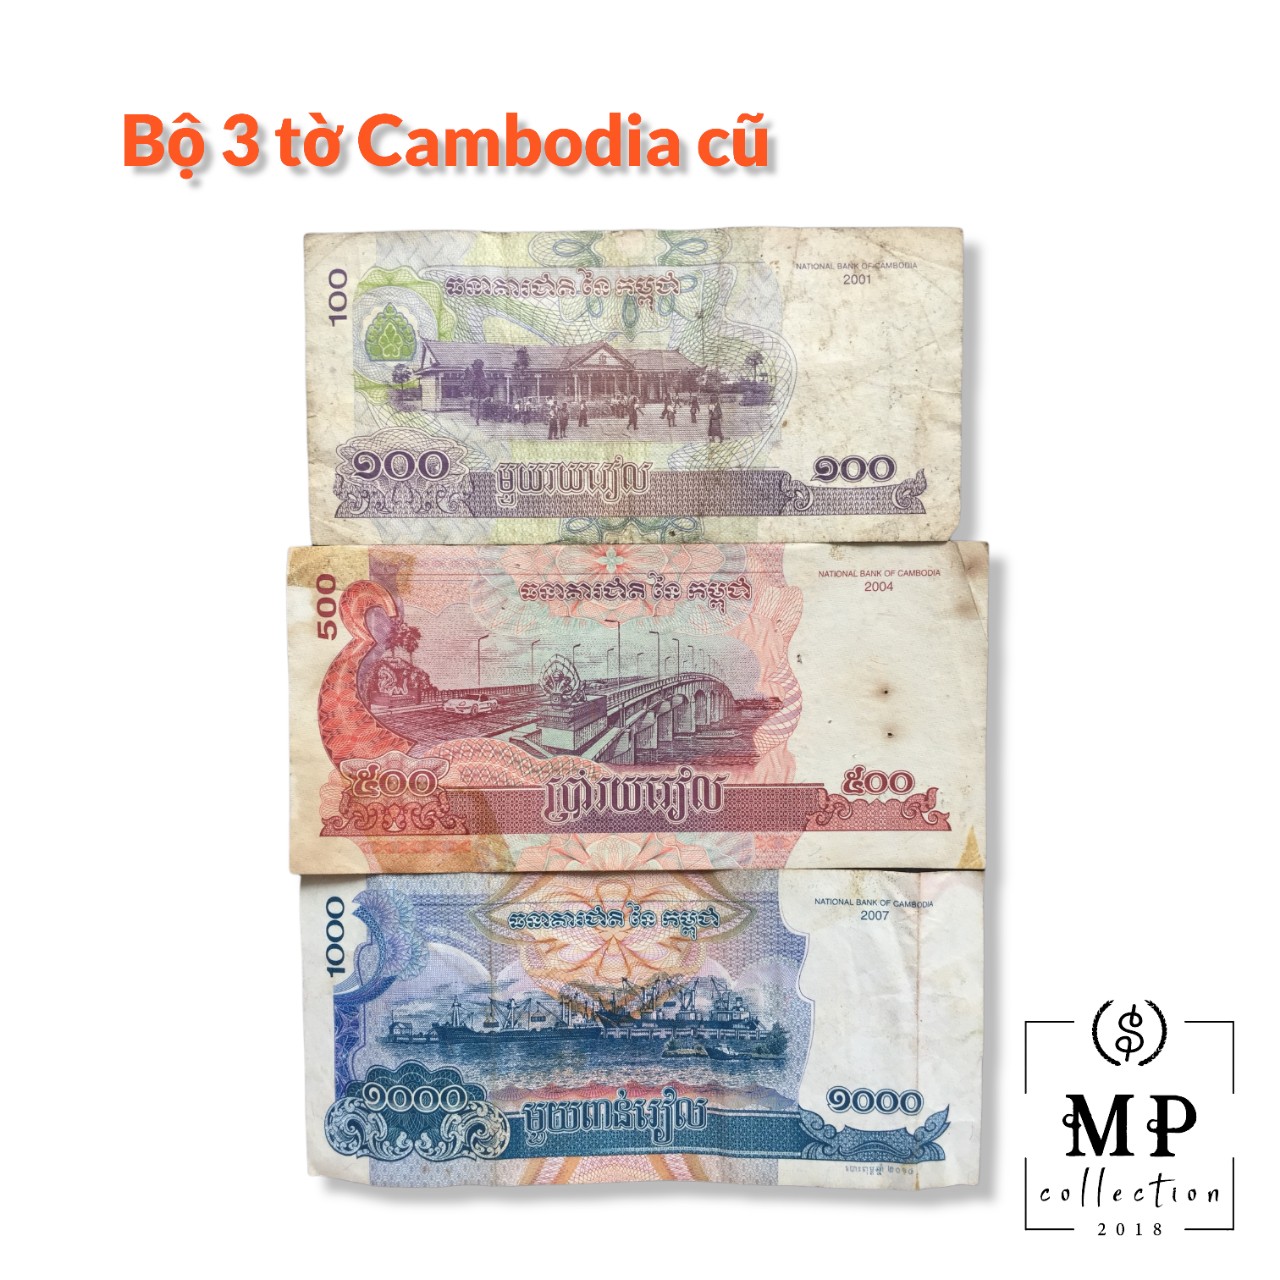 Set 3 tờ Cambodia Campuchia đã qua sử dụng có hình ảnh Angkowat.